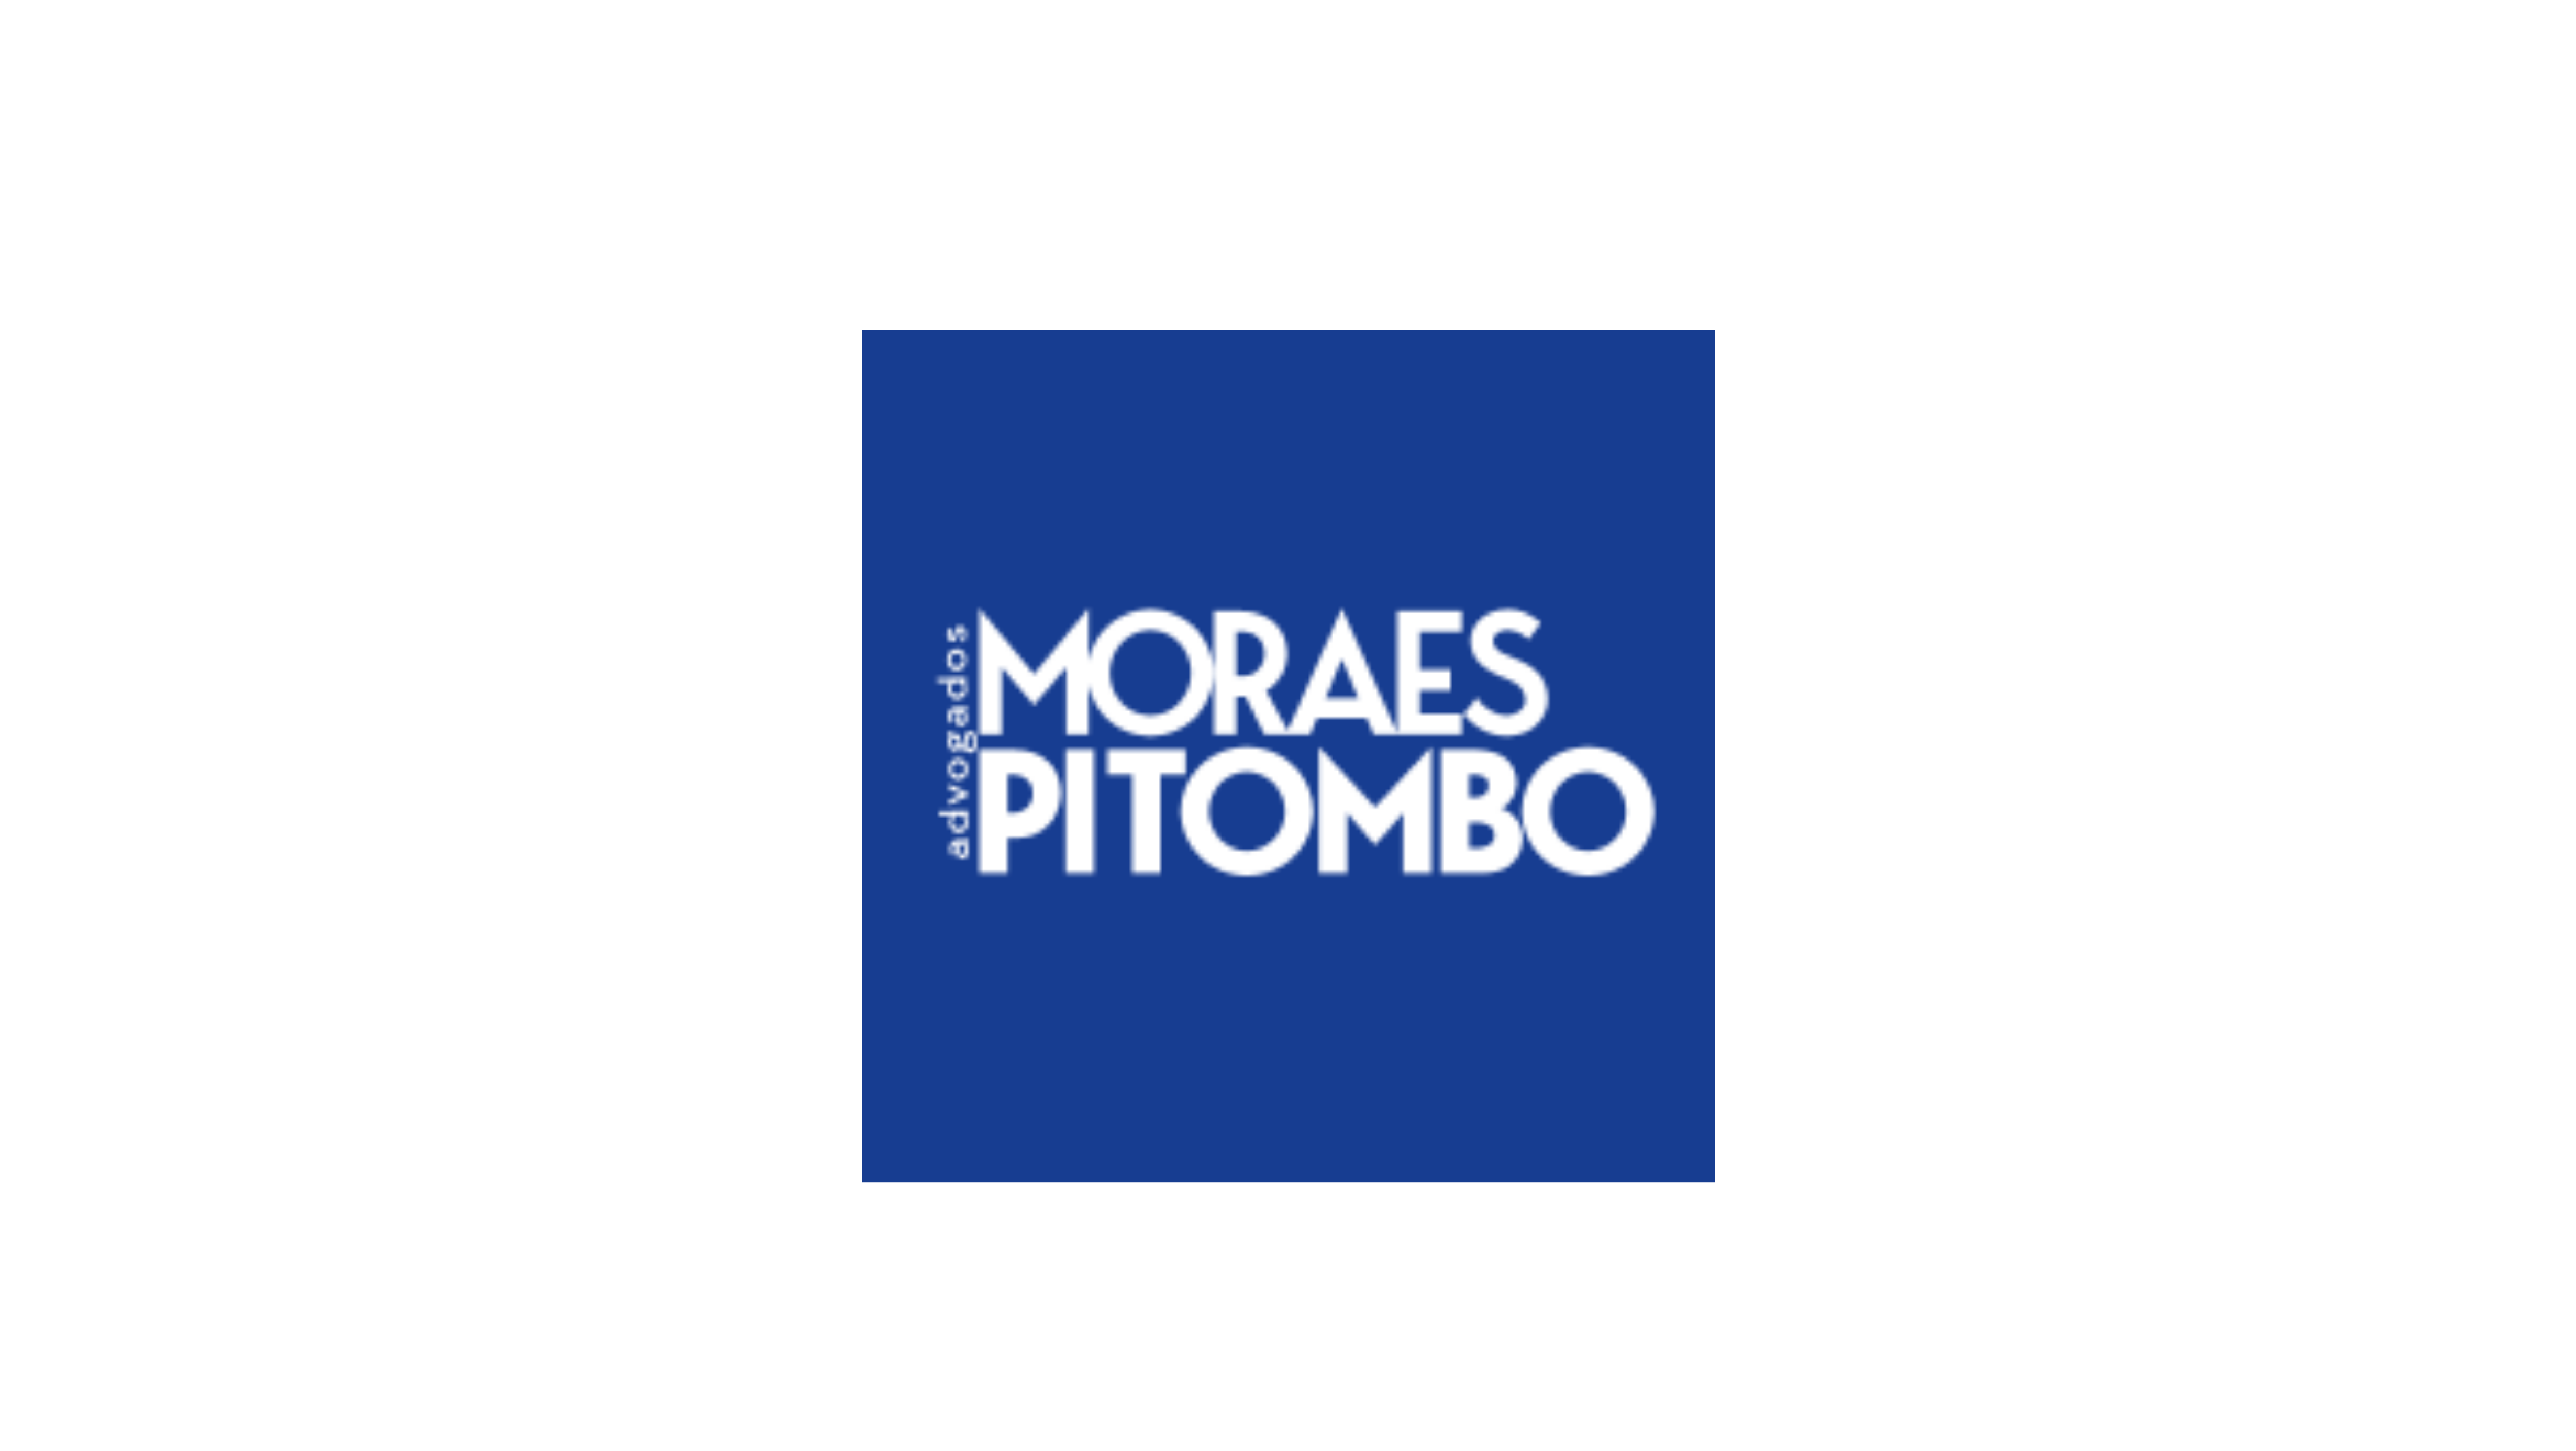 Logotipo da empresa “Moraes Pitombo Advogados”. Trata-se de um logo na forma de um quadrado na cor azul, com as palavras “Moraes Pitombo Advogados” escritas dentro desse quadrado.